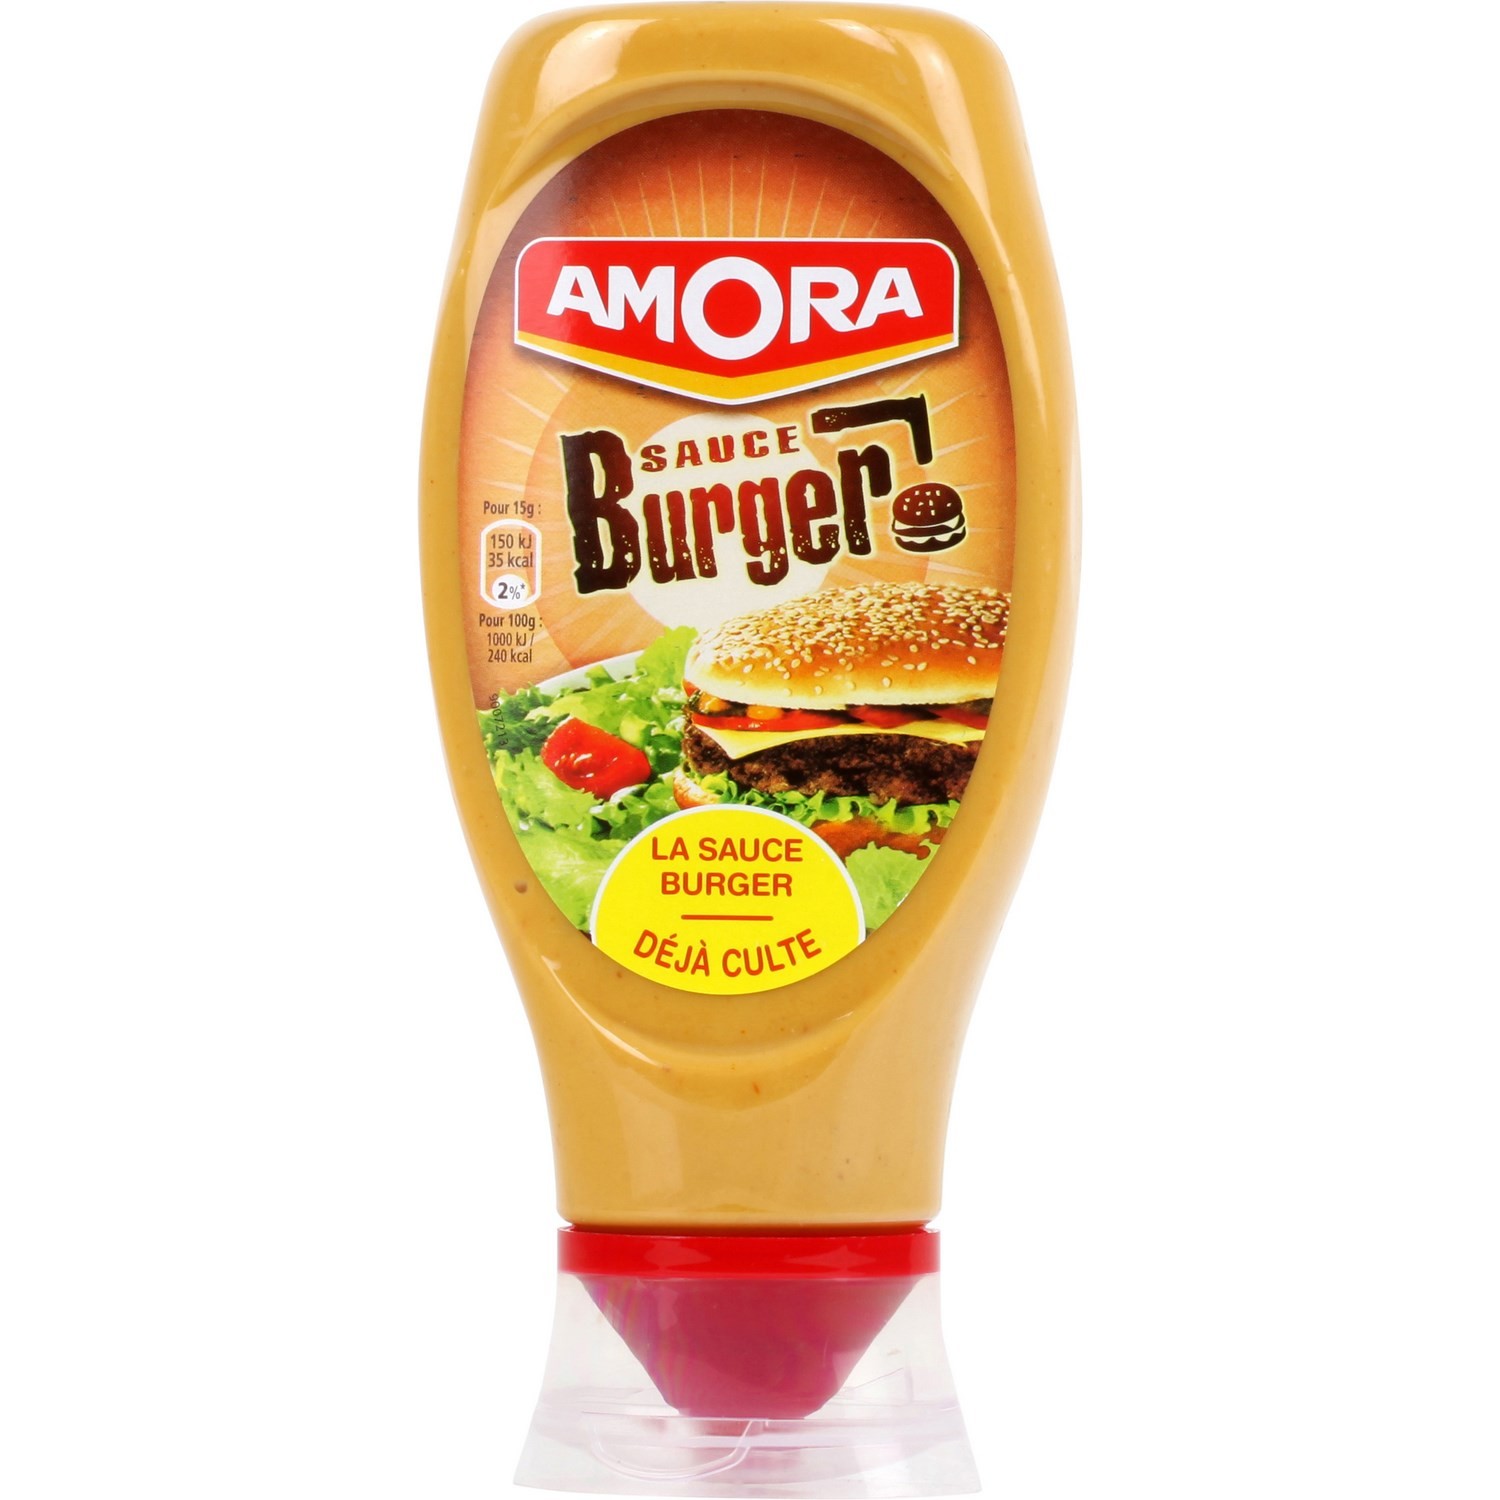 Special Burger sauce Amora